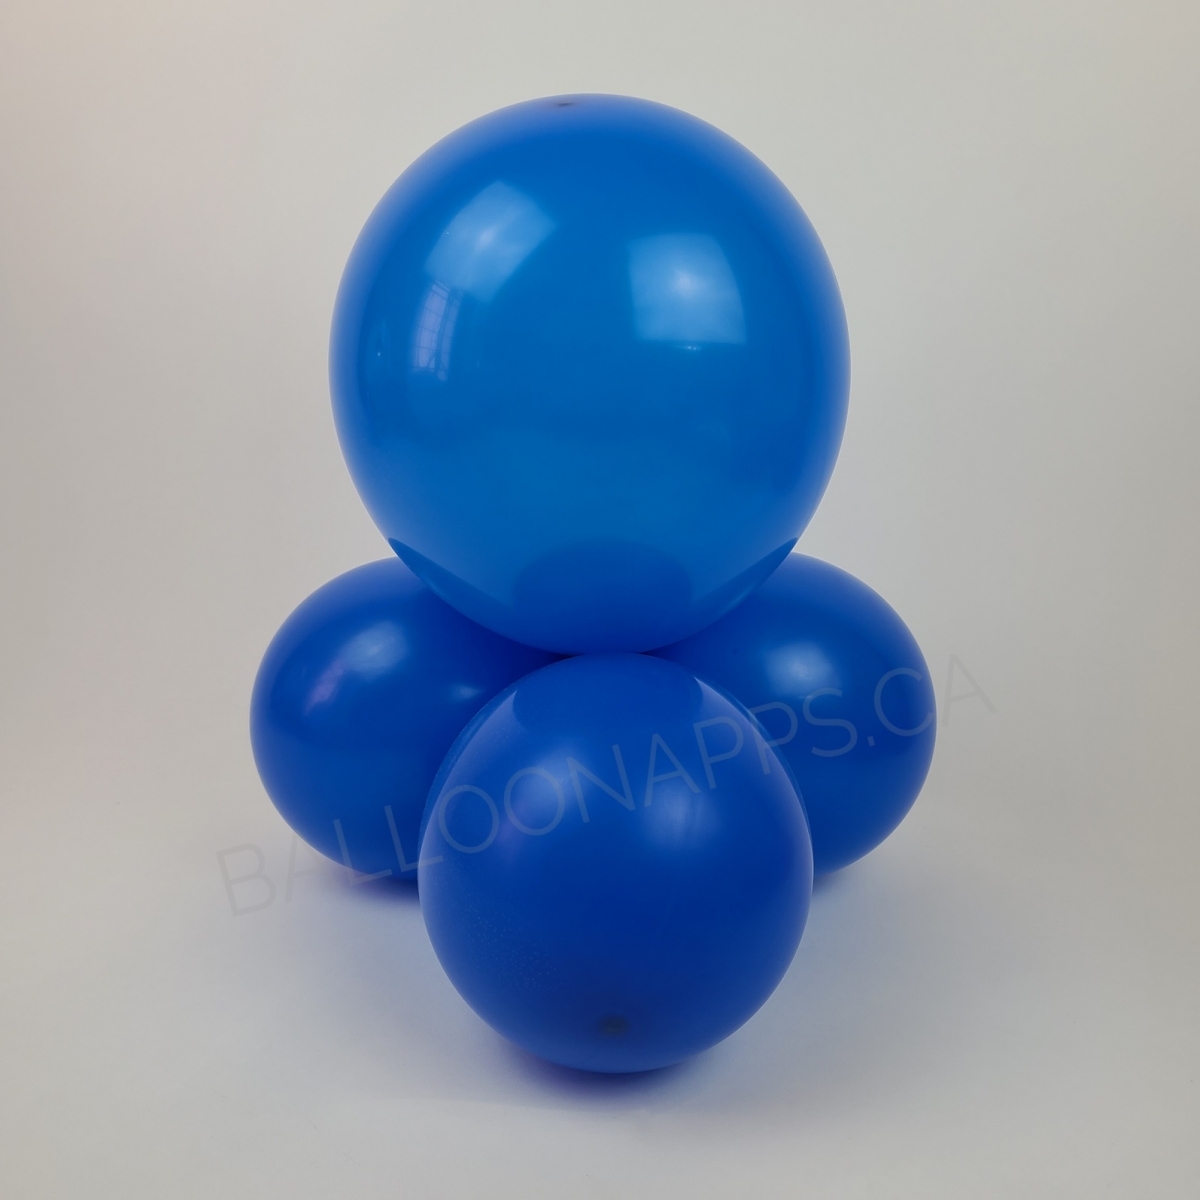 balloon texture Q (50) 16